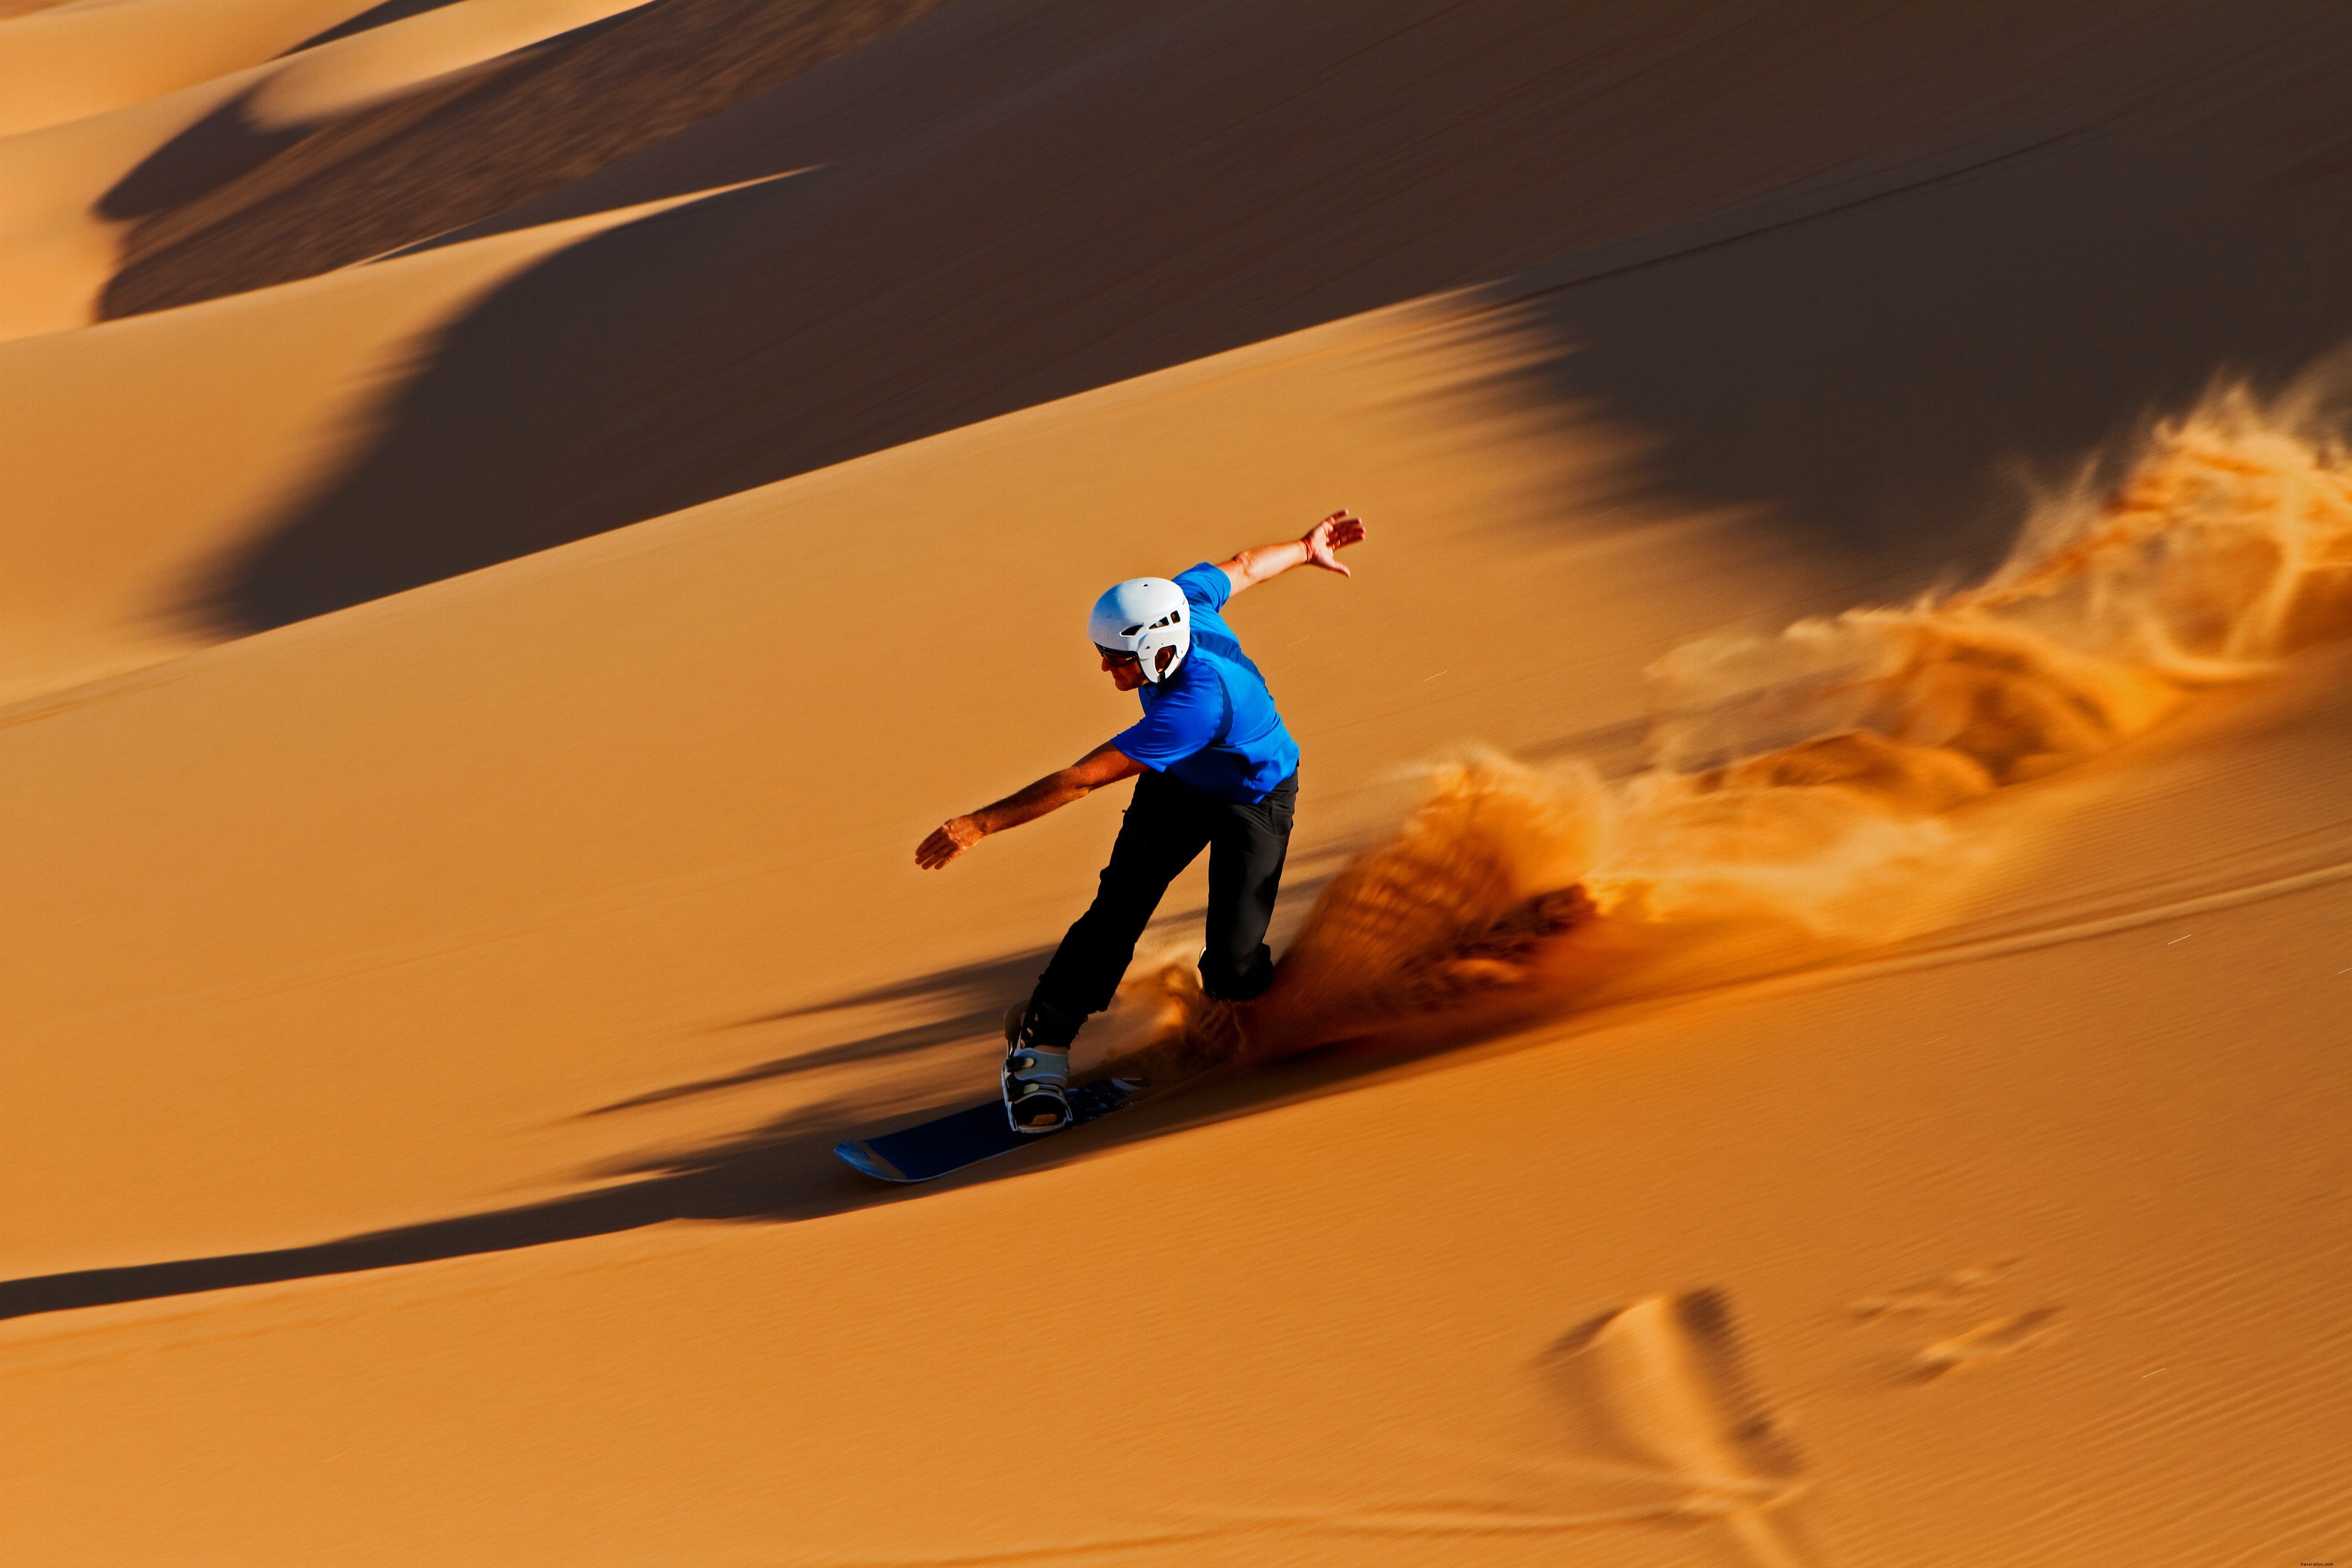 Embarque nas dunas, escalando, surf e mais:encontrar aventura na Namíbia 